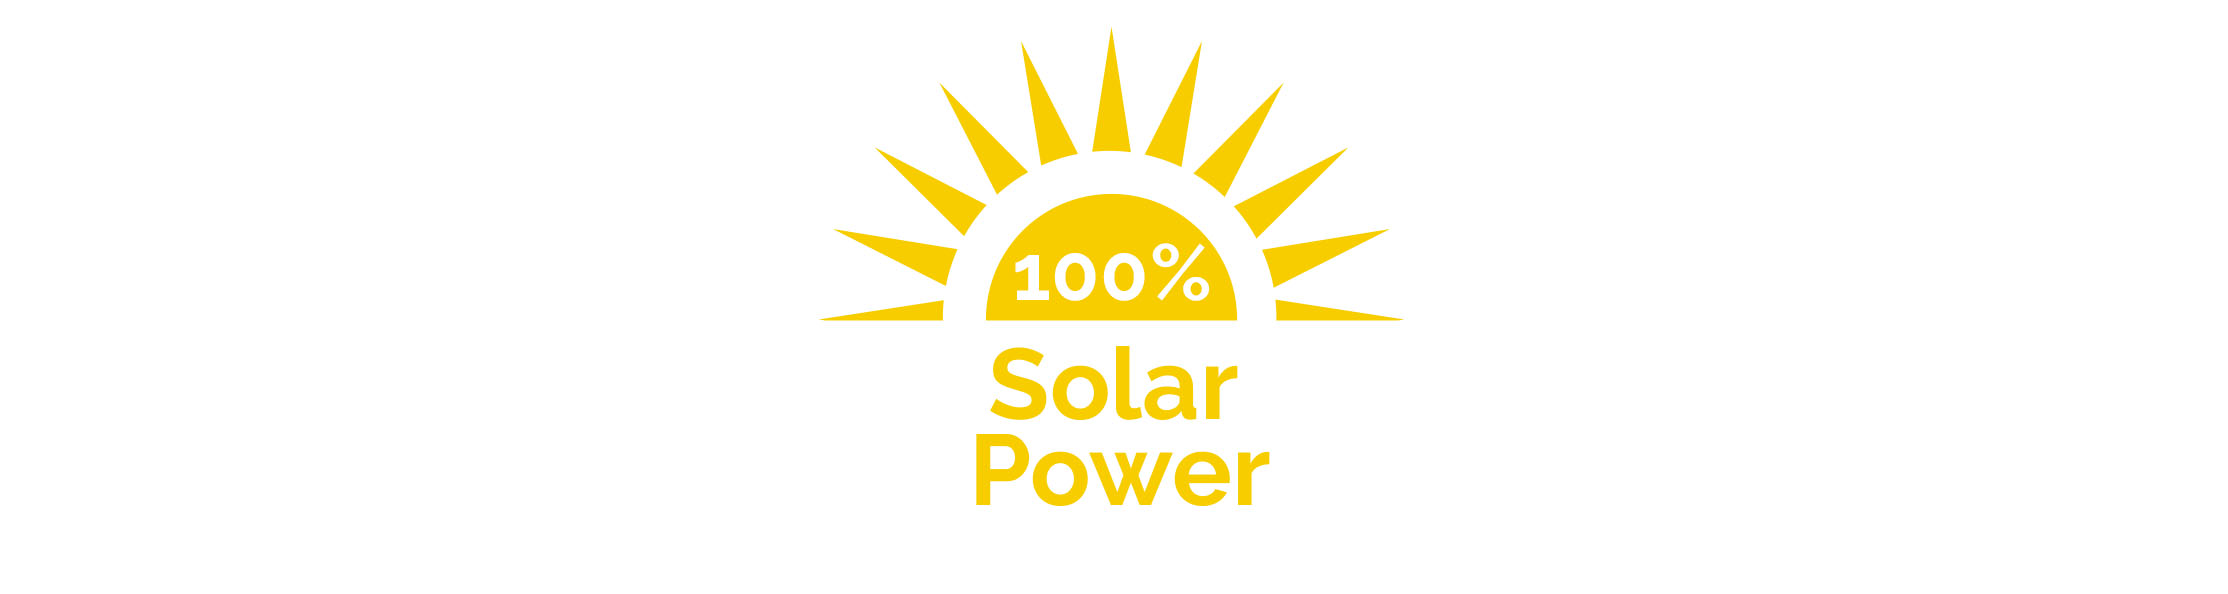 100% Solar Power genäht